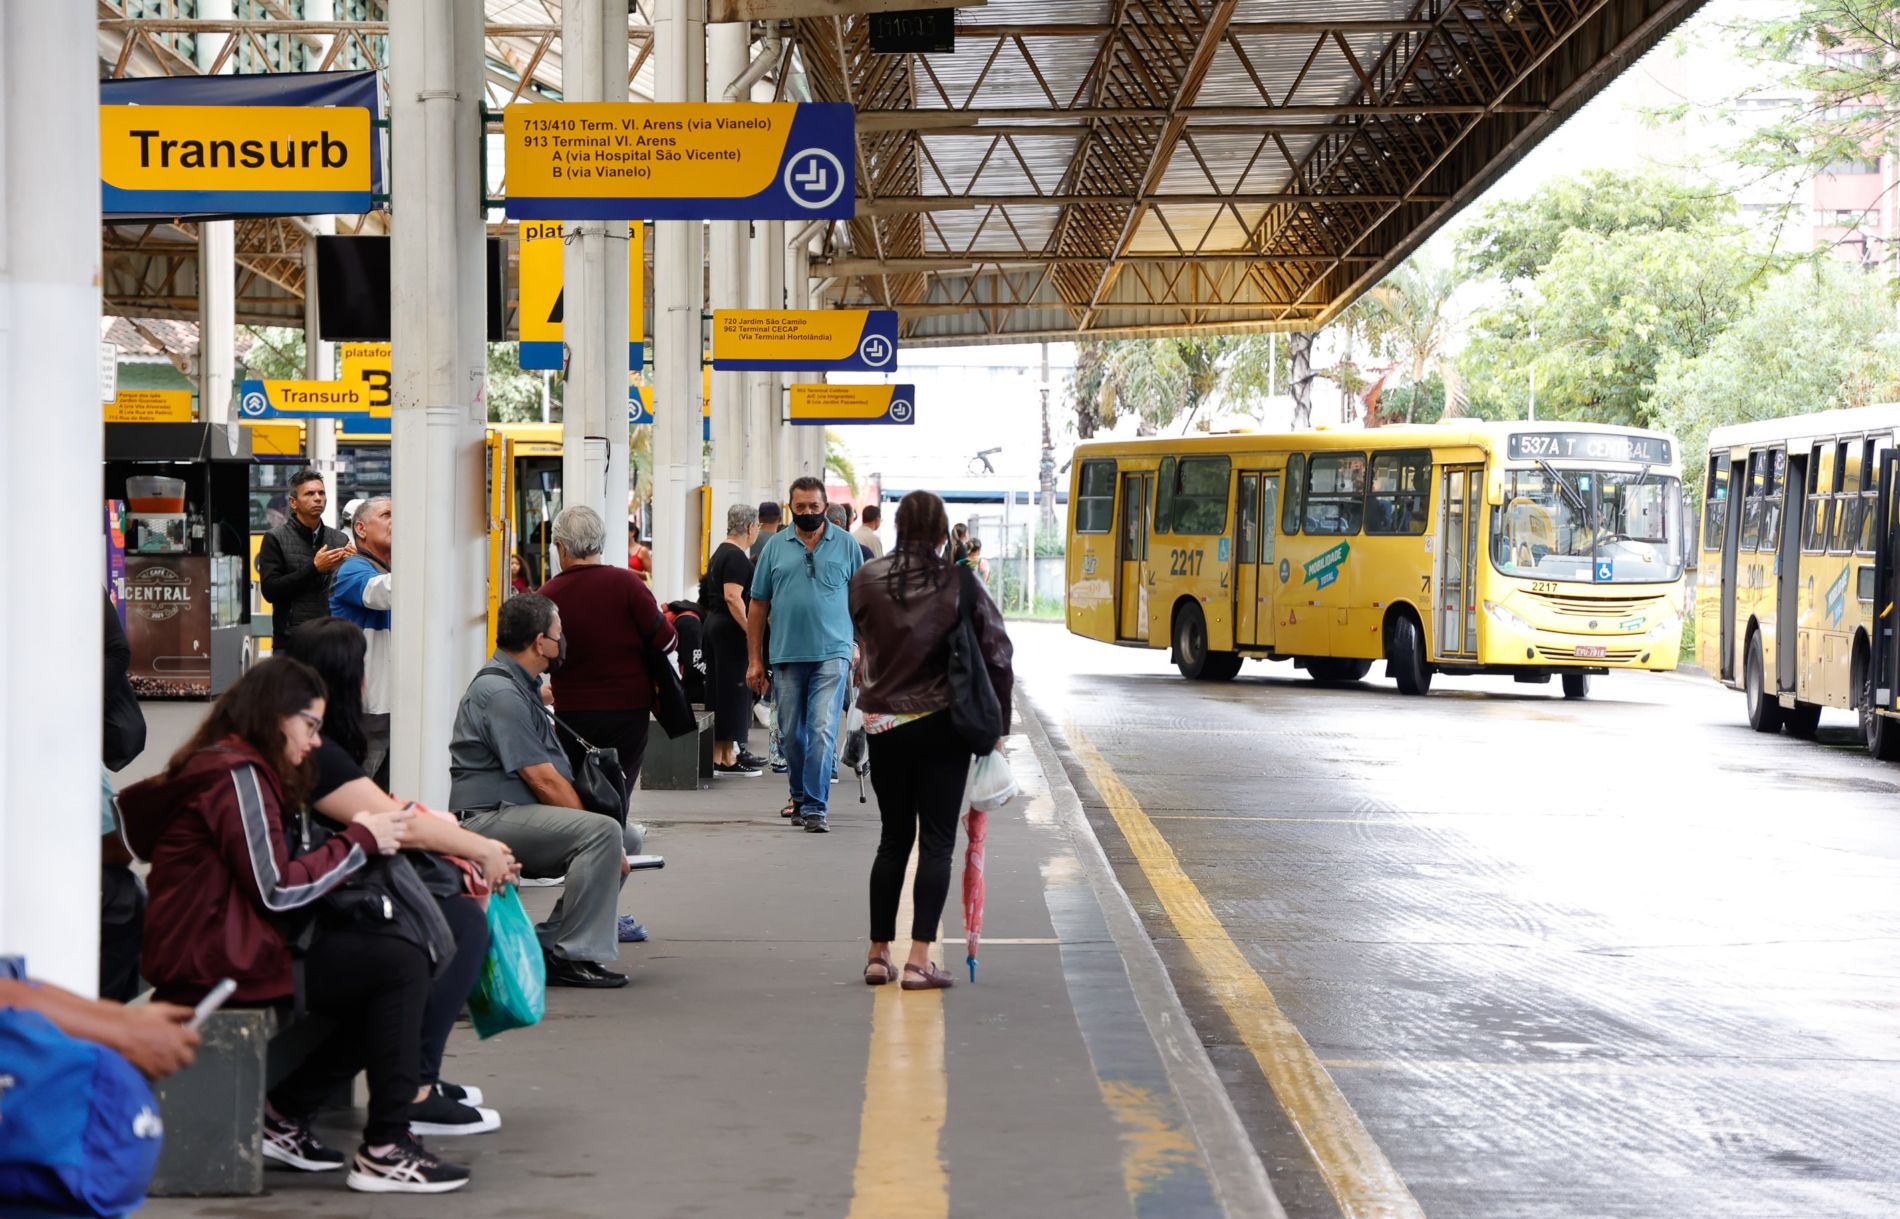 Na imagem, está o terminal de ônibus central com pessoas aguardando na plataforma, e alguns ônibus saindo para fazer os percursos.